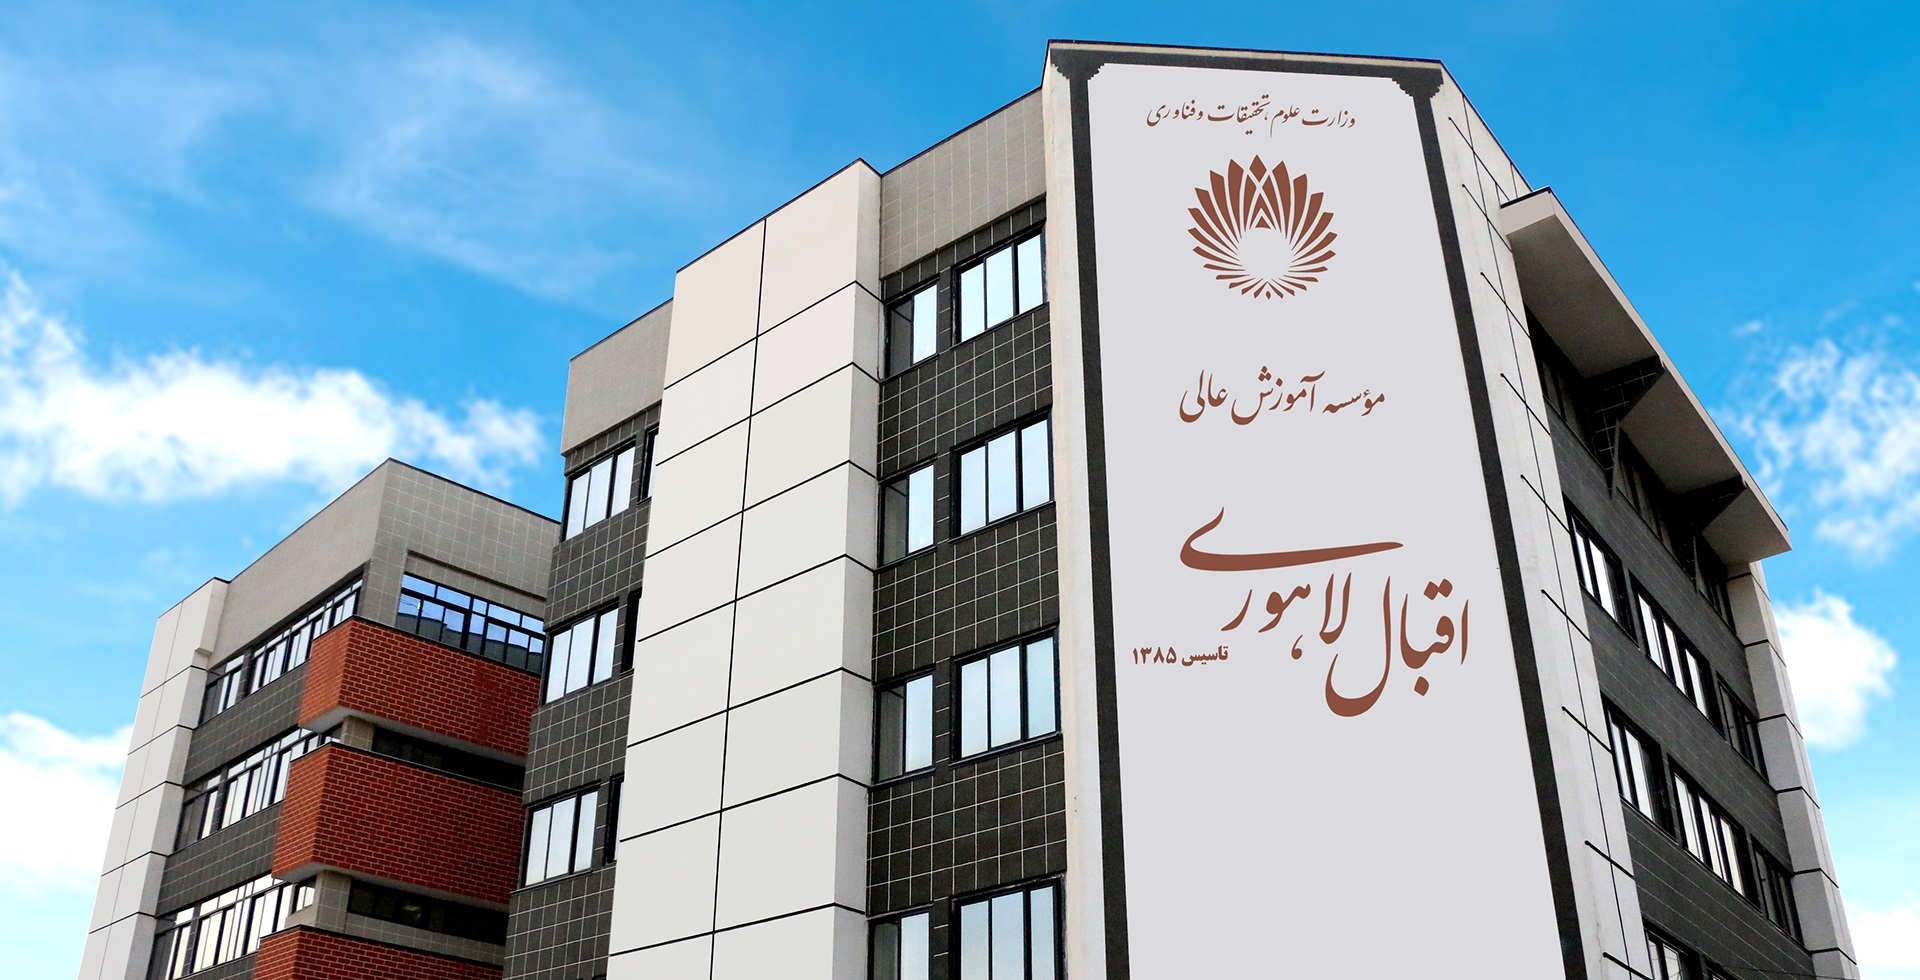 Eqbal Lahoori Institute of Higher Education